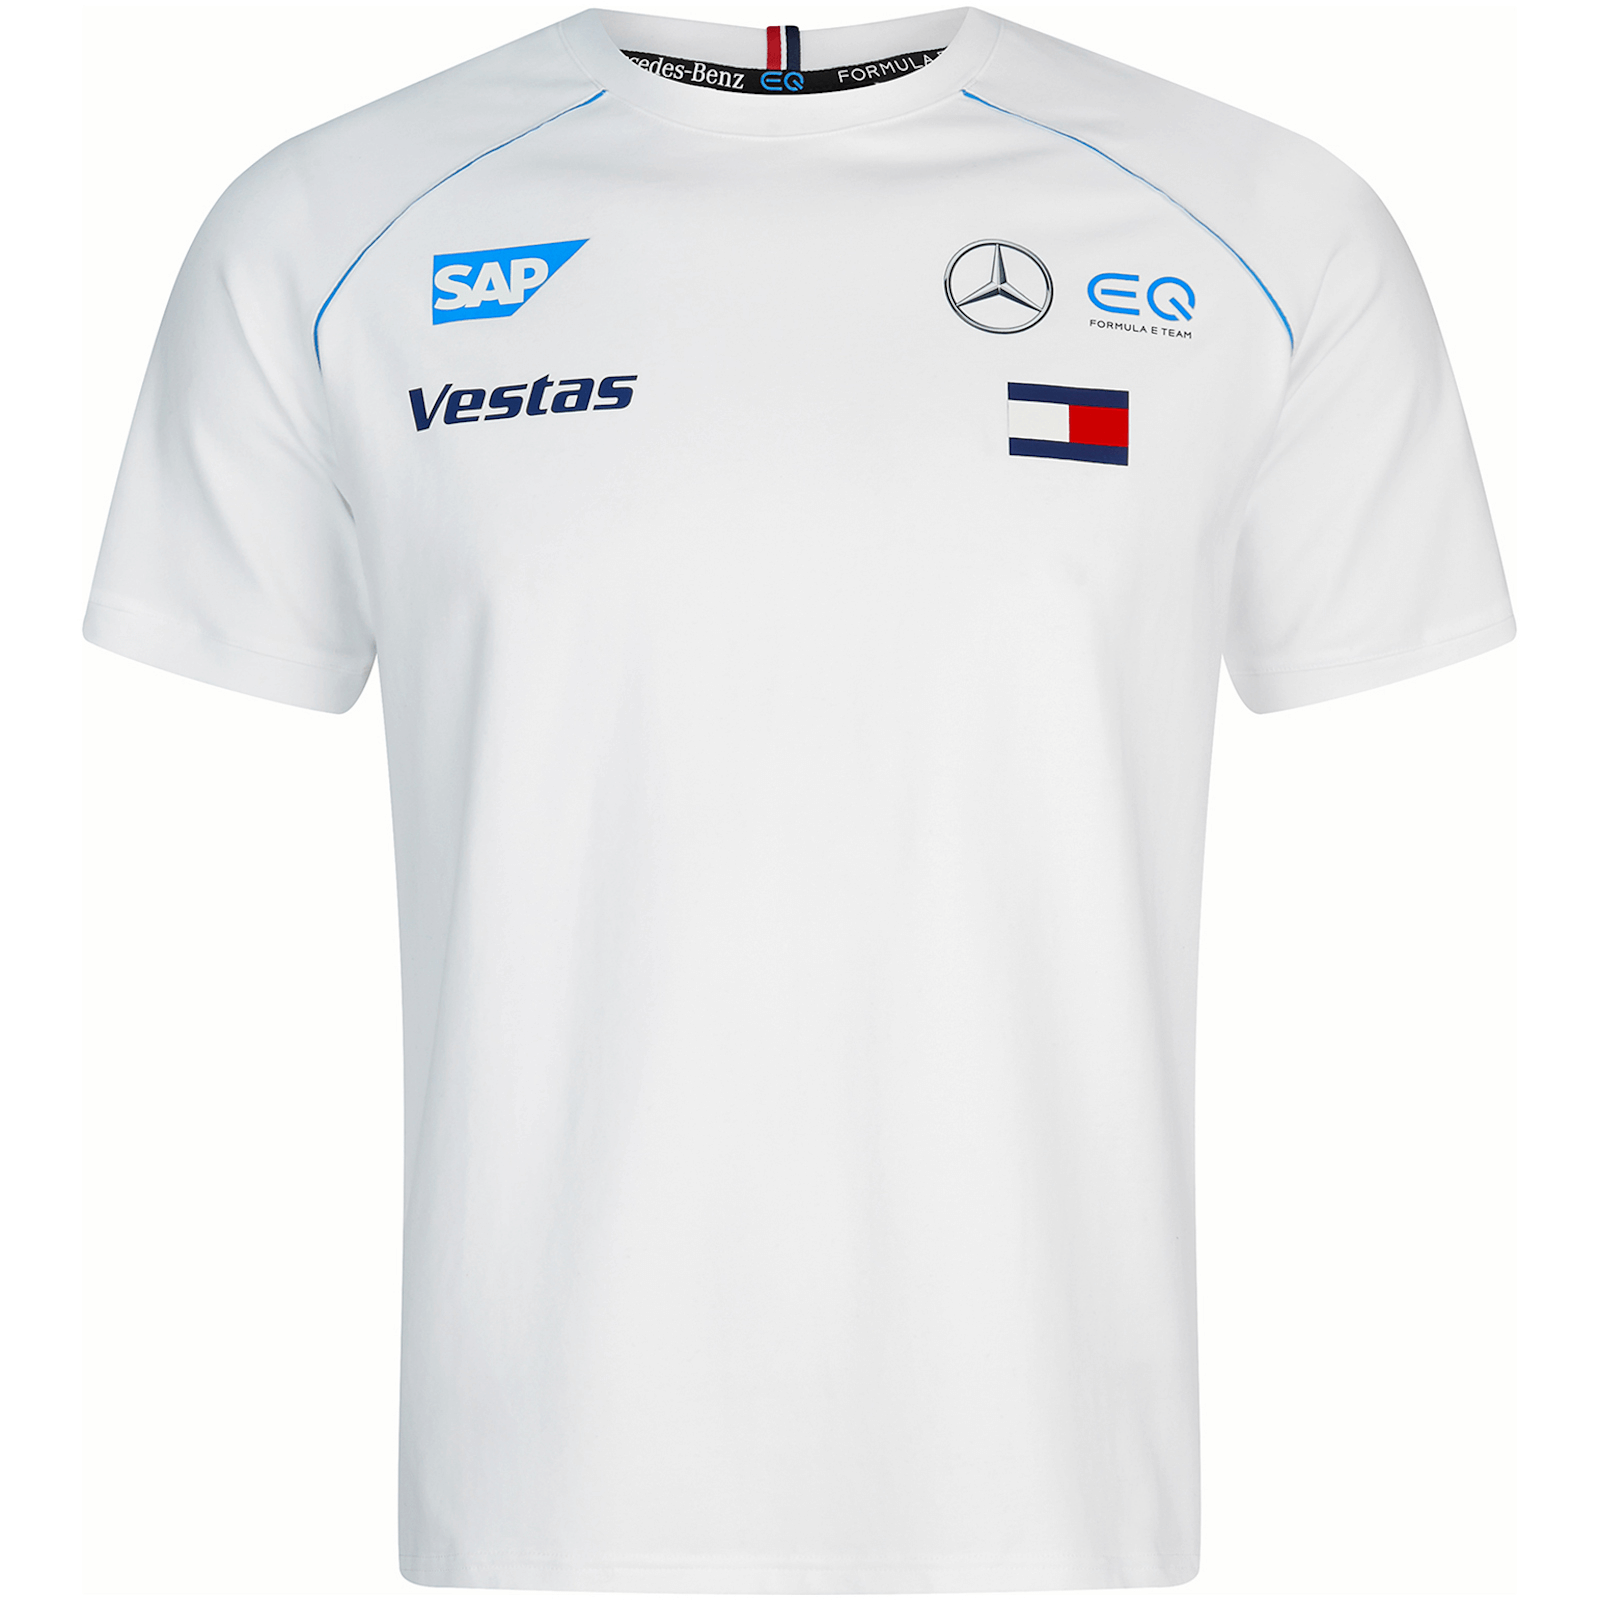 

2020 Men's White Team T-Shirt - M